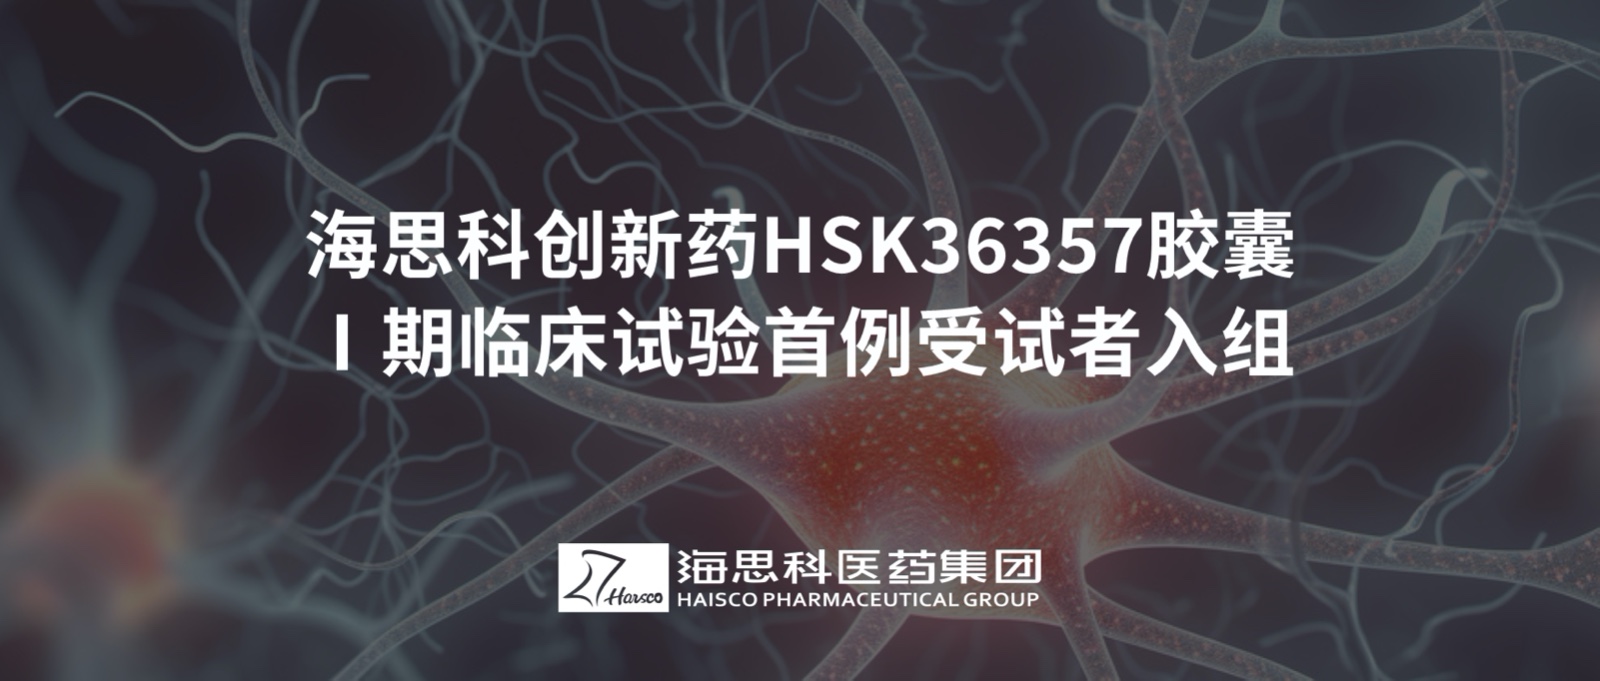 凯发k8国际首页登录创新药HSK36357胶囊Ⅰ期临床试验首例受试者入组